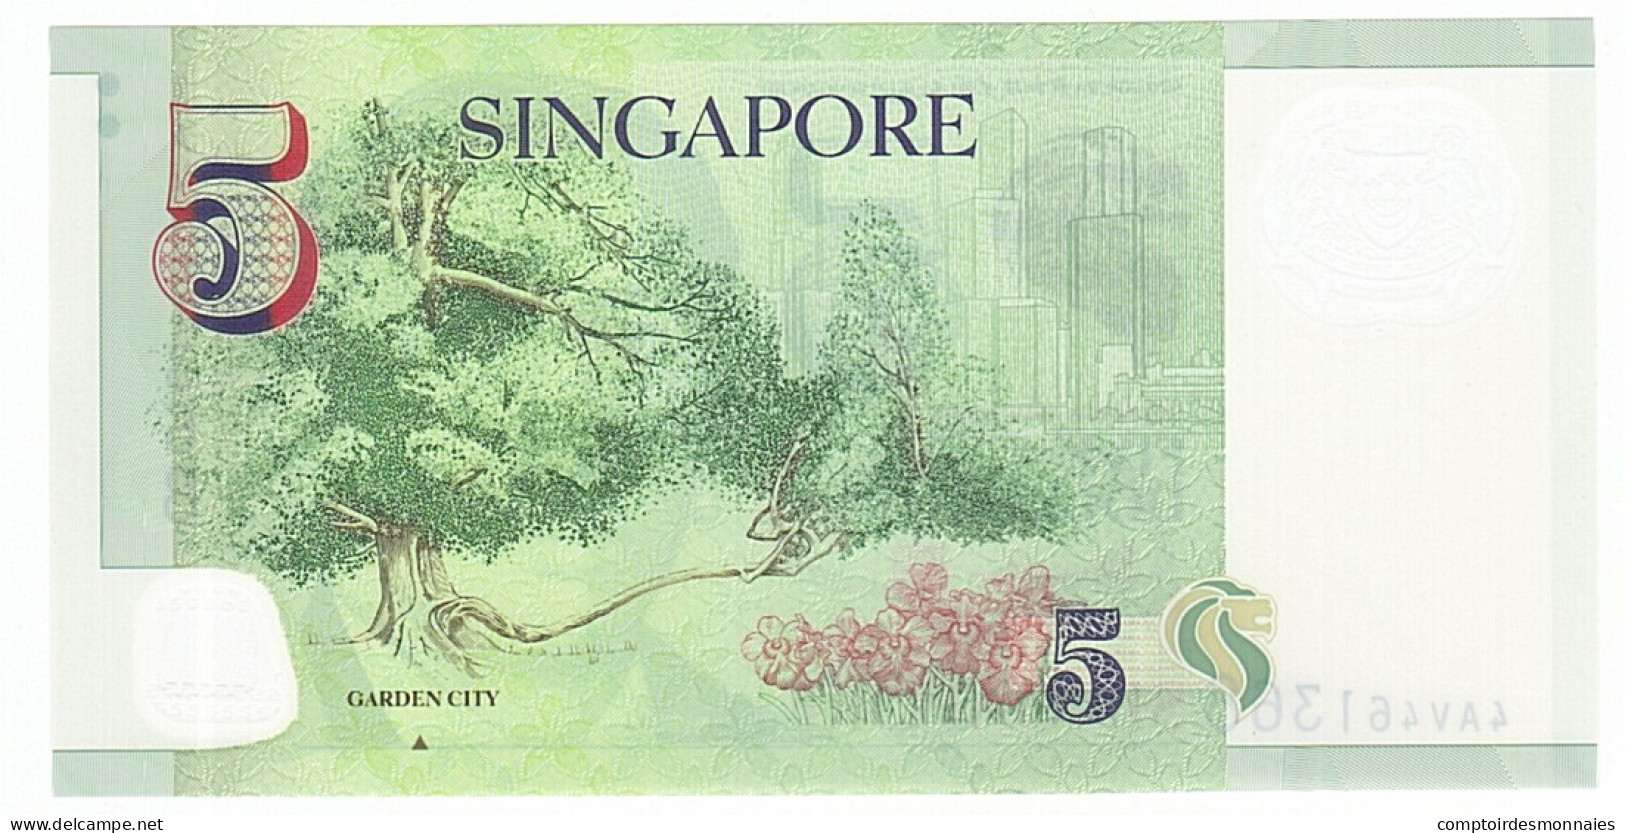 Billet, Singapour, 5 Dollars, 2005, NEUF - Singapur